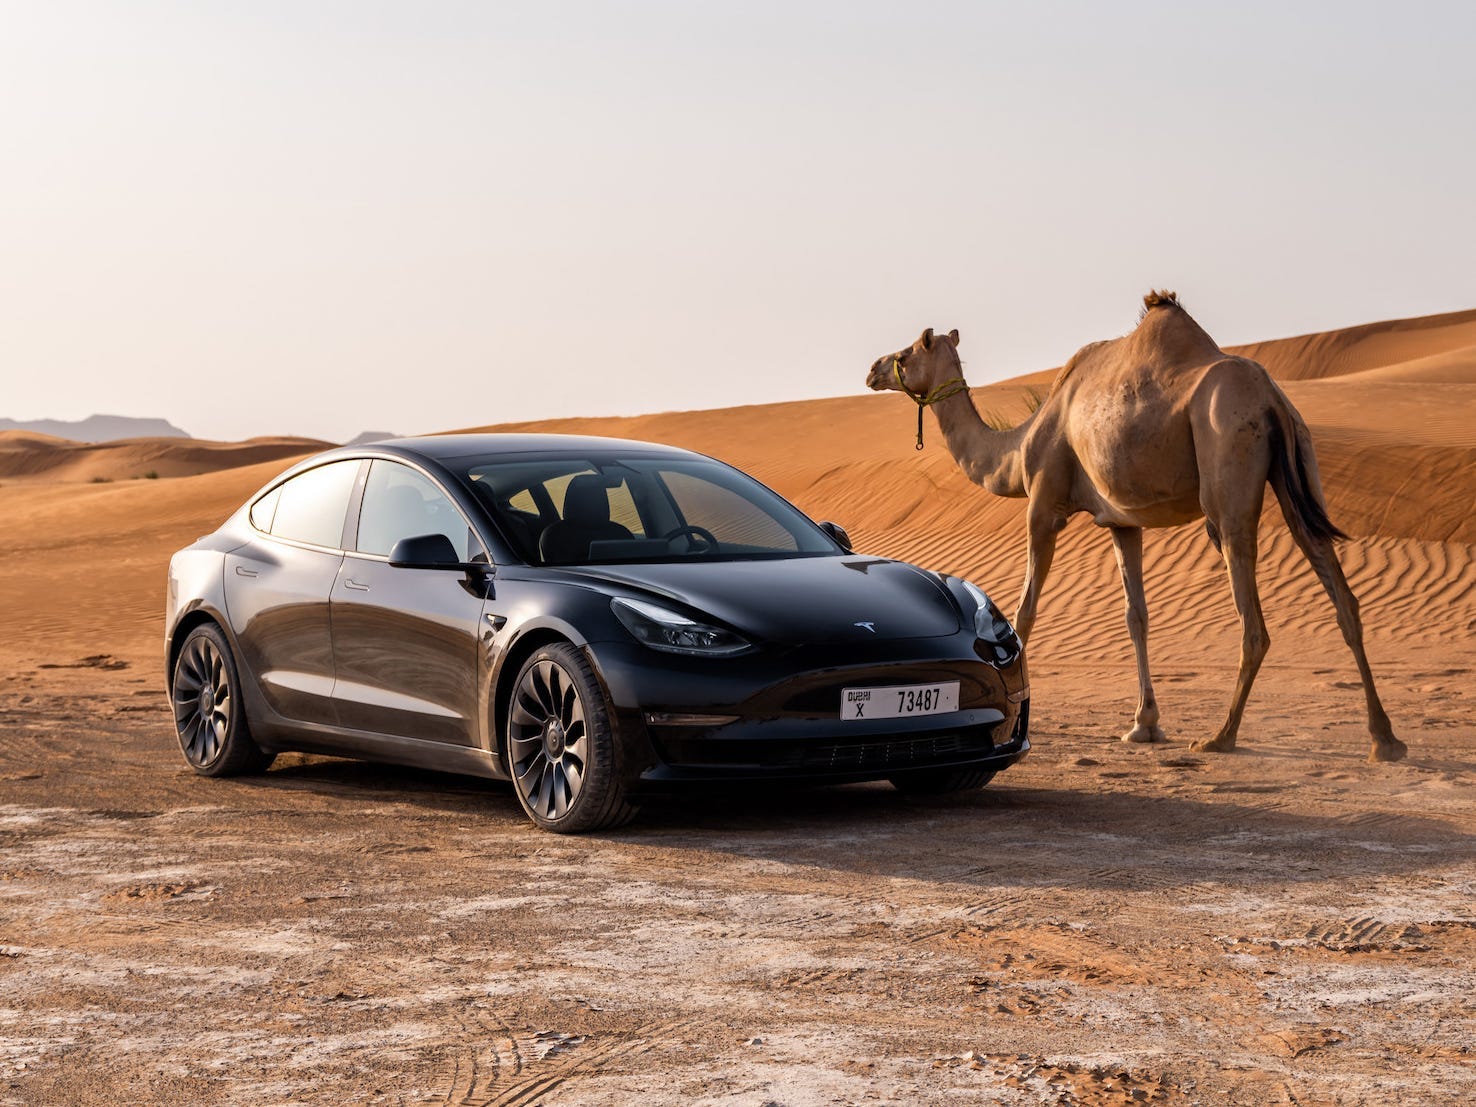 Das Tesla Model 3 parkte in der Wüste neben einem Kamel.